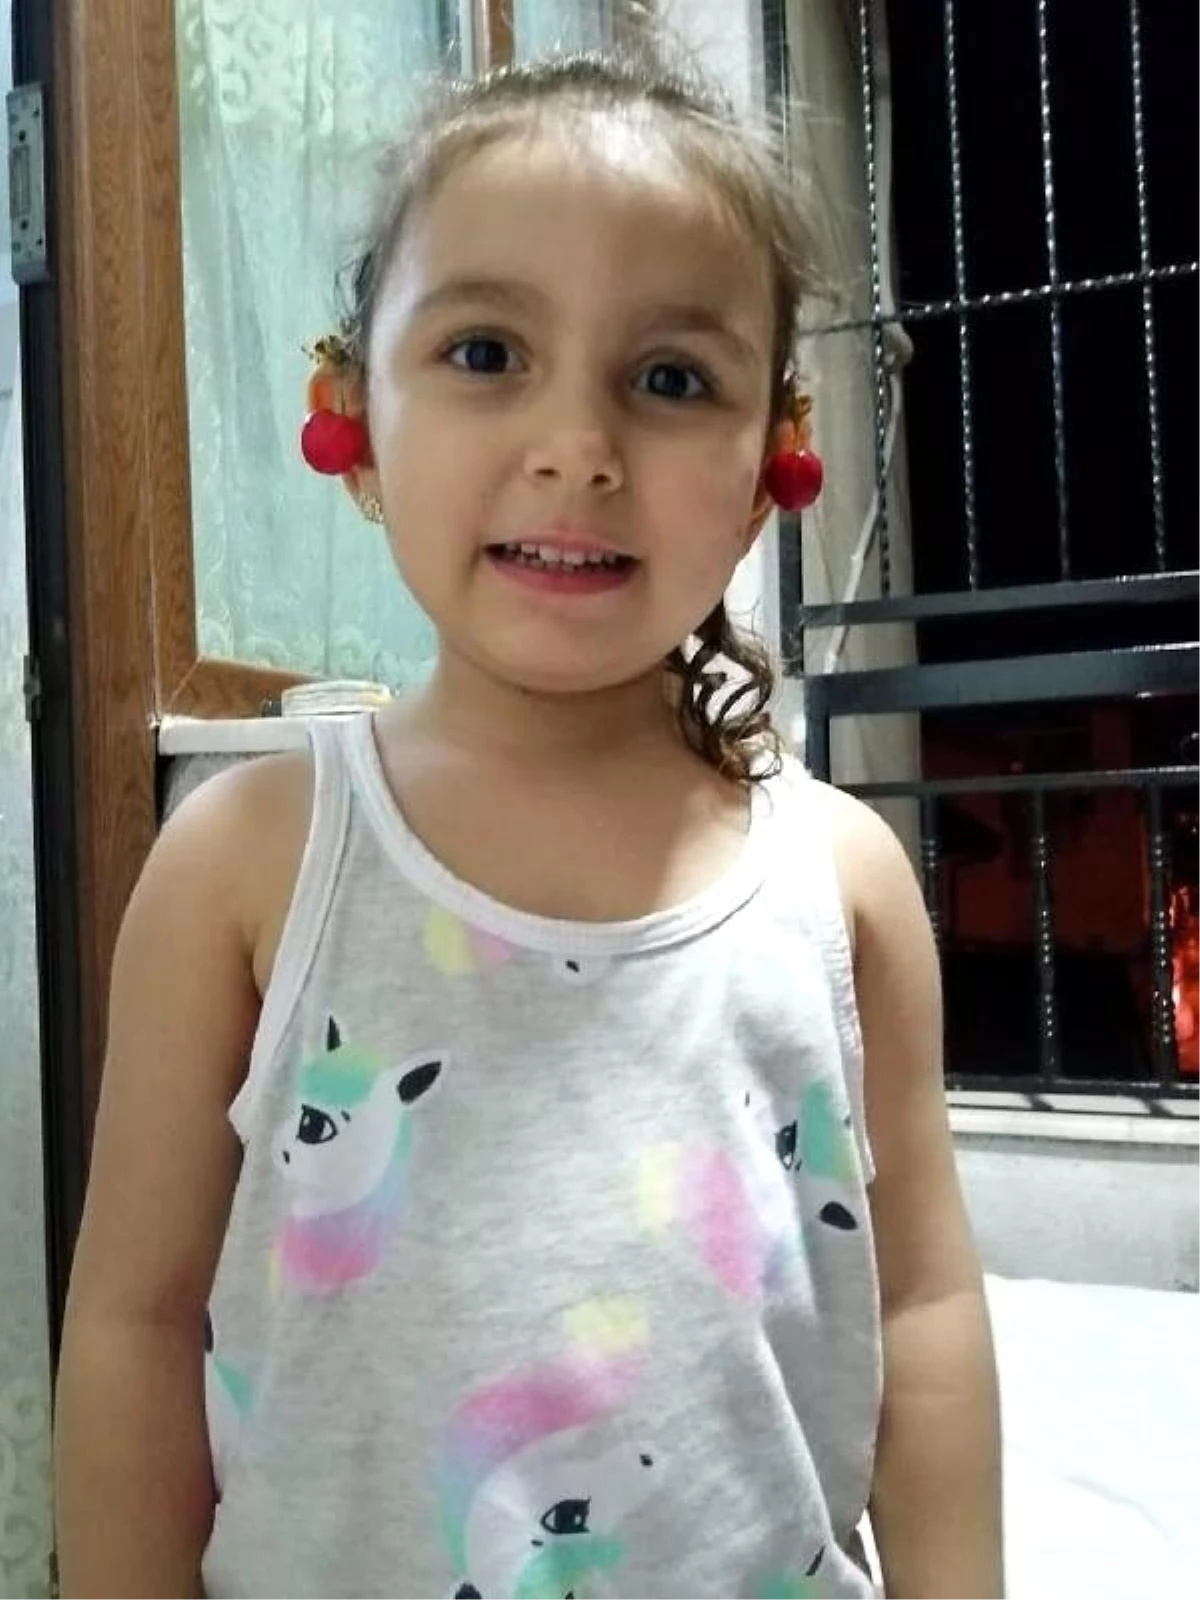 4 yaşındaki kızını yastıkla boğdu, çelişkili ifadesi cinayeti ortaya çıkardı